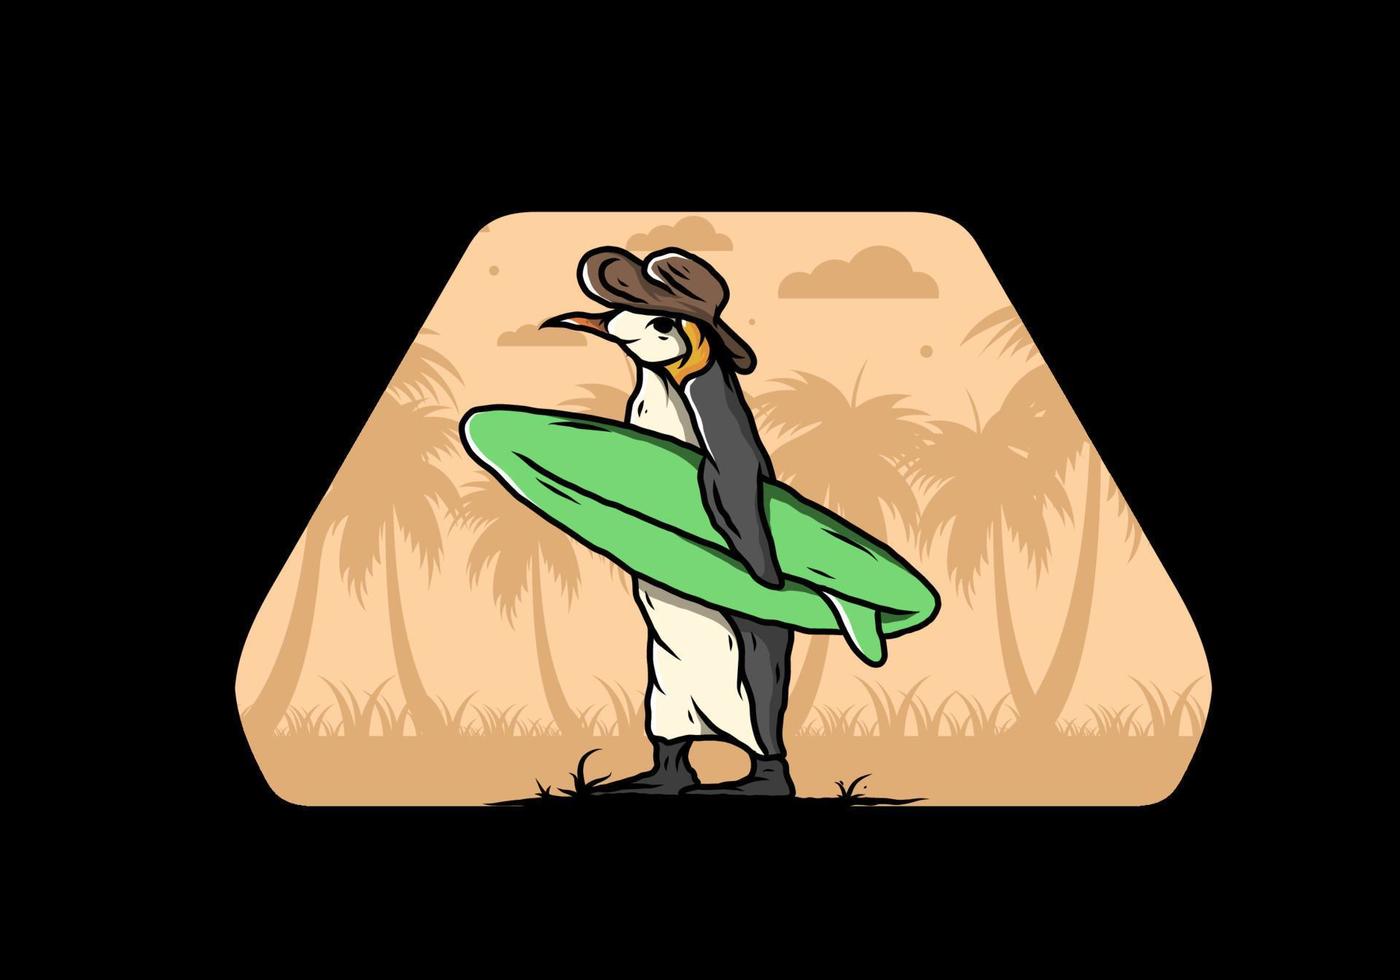 pinguim bonitinho carregando uma prancha de surf na ilustração de praia vetor